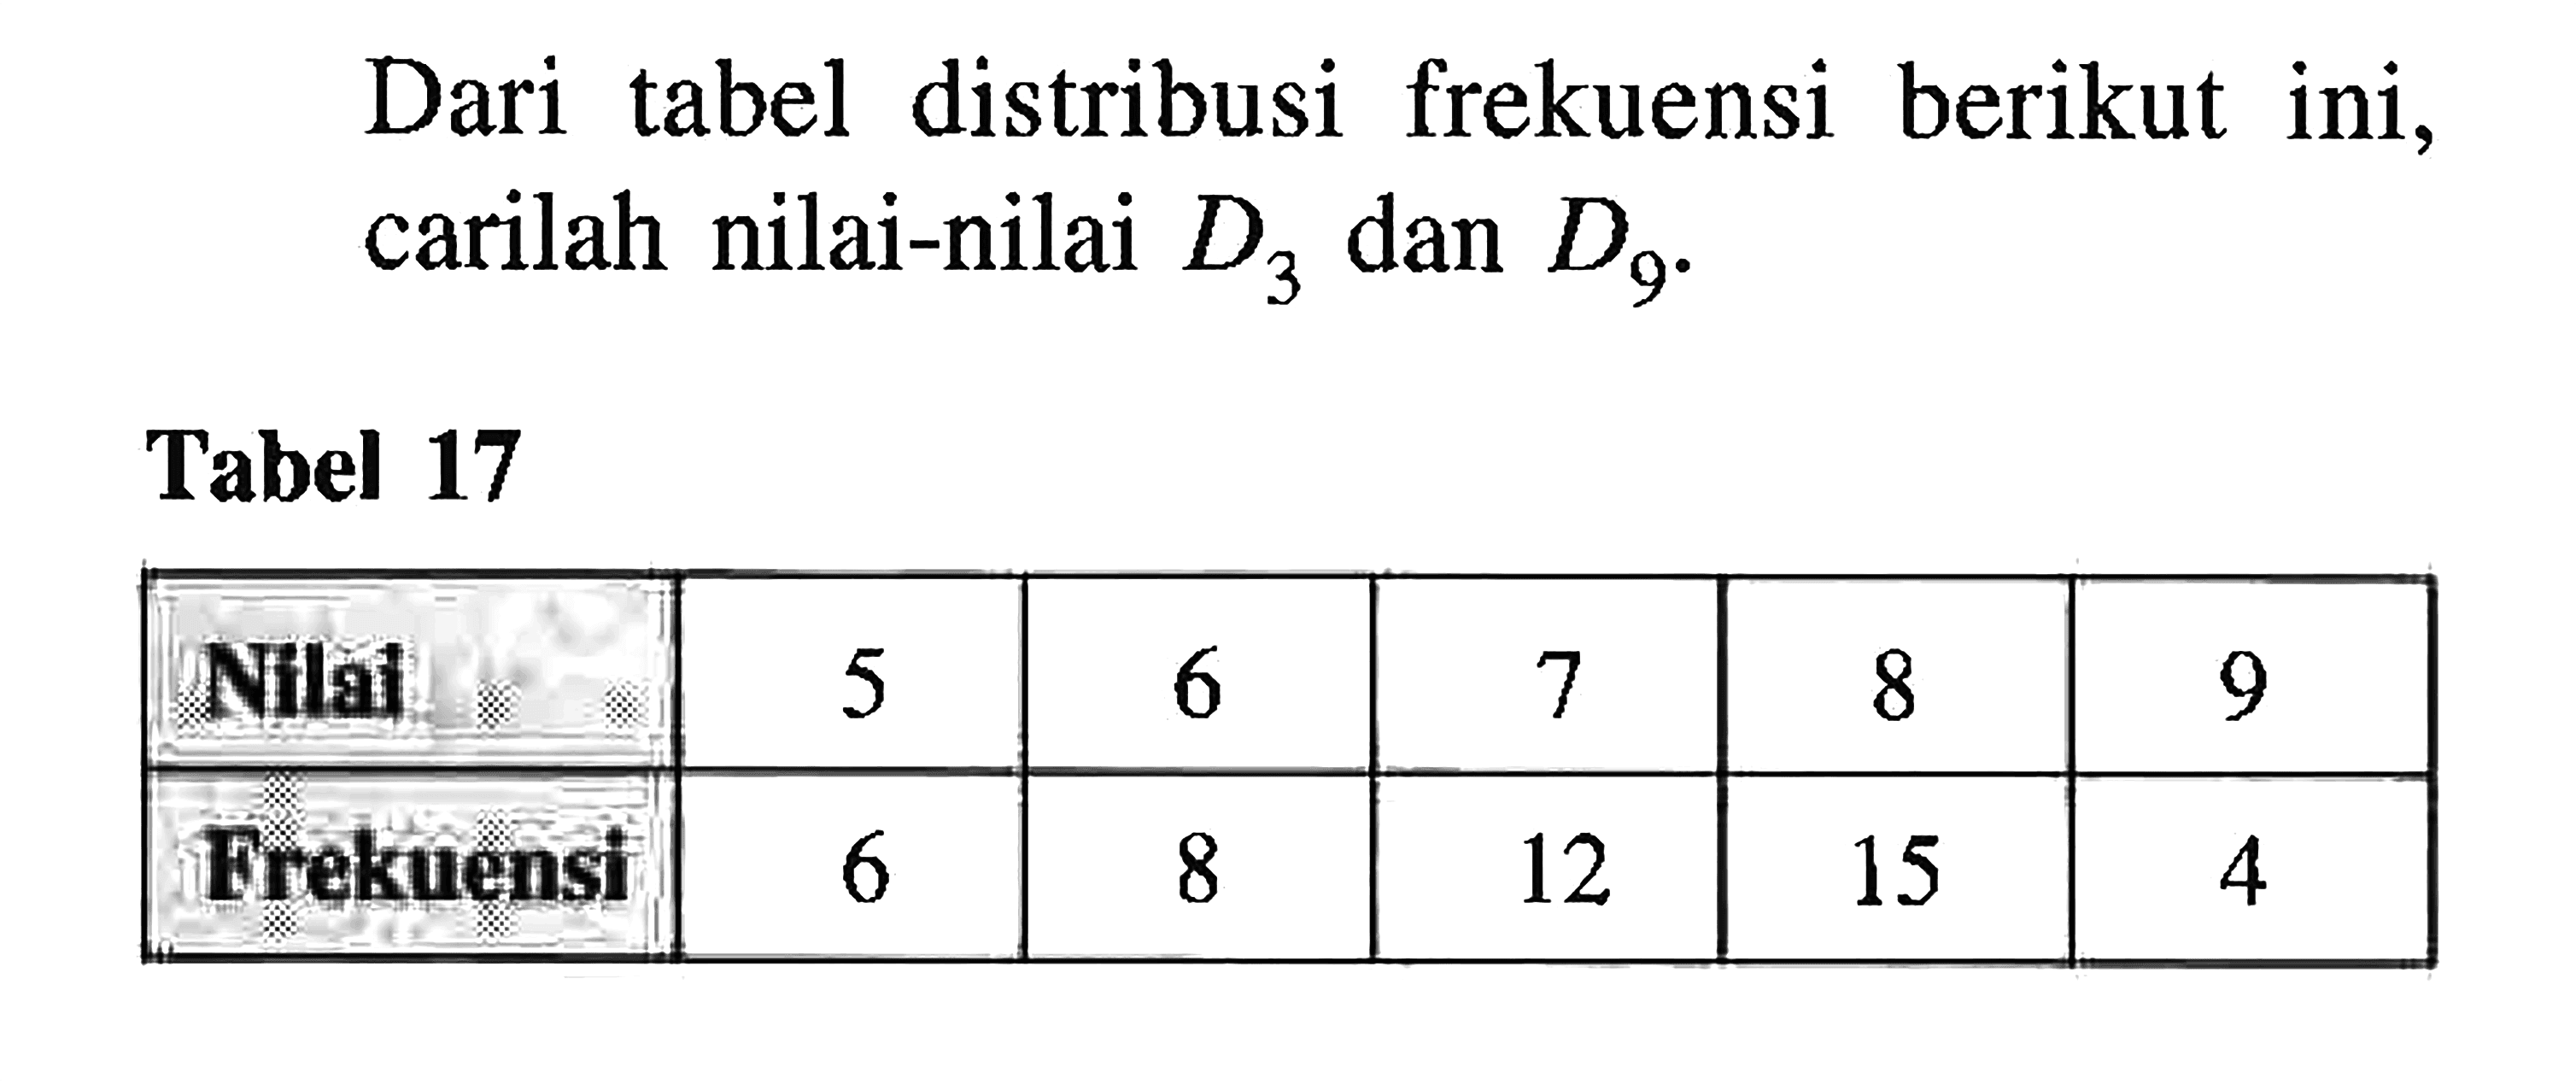 Dari tabel distribusi frekuensi berikut ini, carilah nilai-nilai D3 dan D9. Tabel 17 Nilai 5 6 7 8 9 Frekuensi 6 8 12 15 4